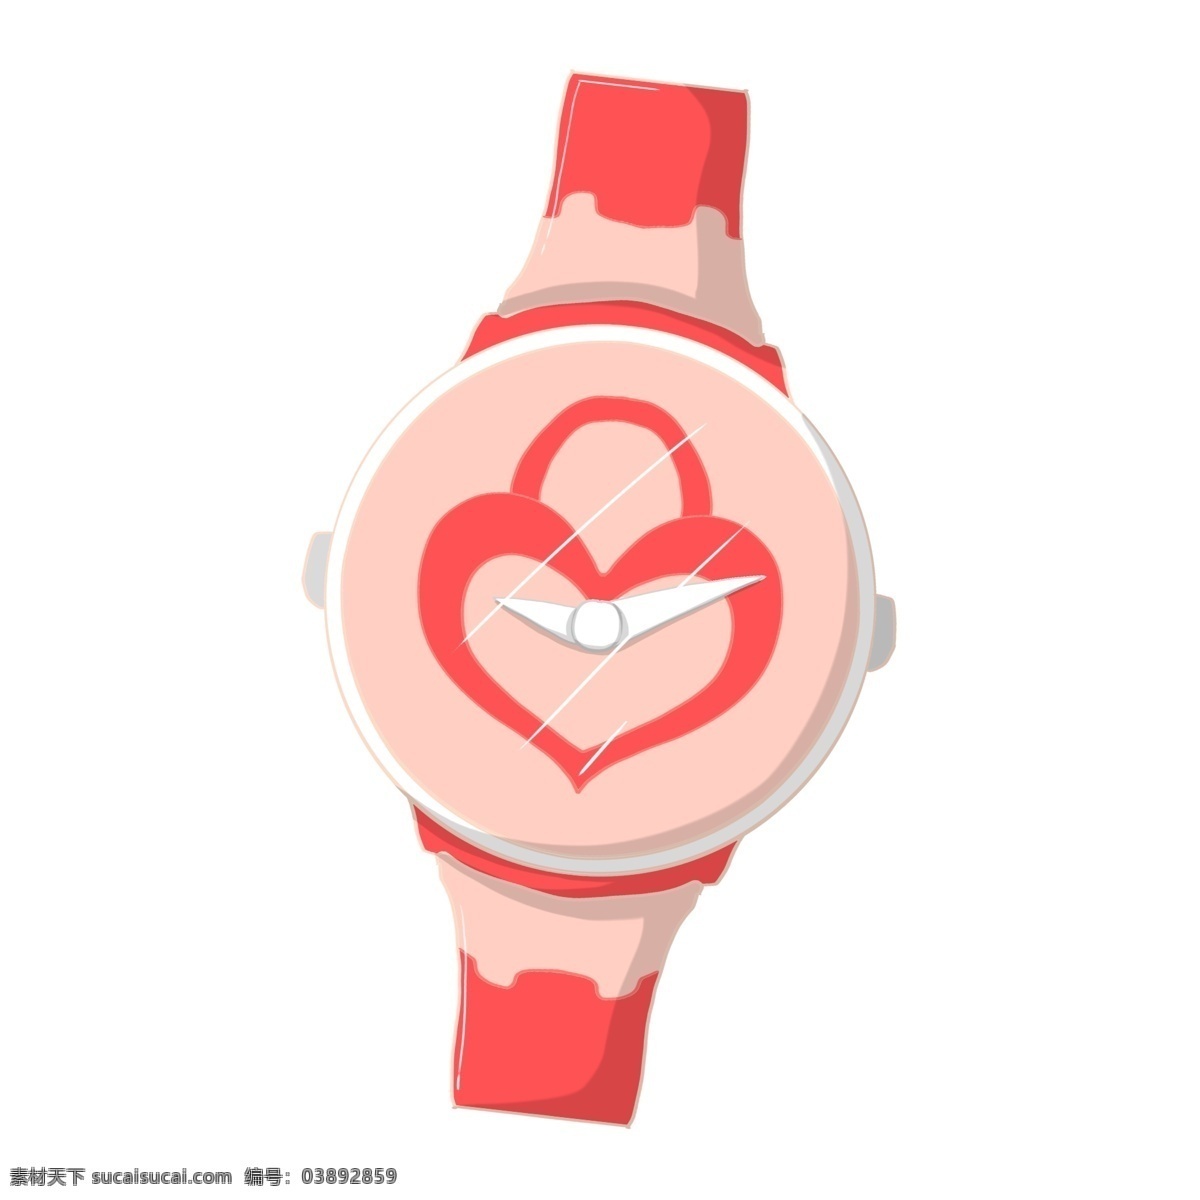 情人节 红色 手表 手绘手表 卡通手表 手表插画 浪漫礼物 情人节手表 漂亮的手表 桃心手表 可爱的手表